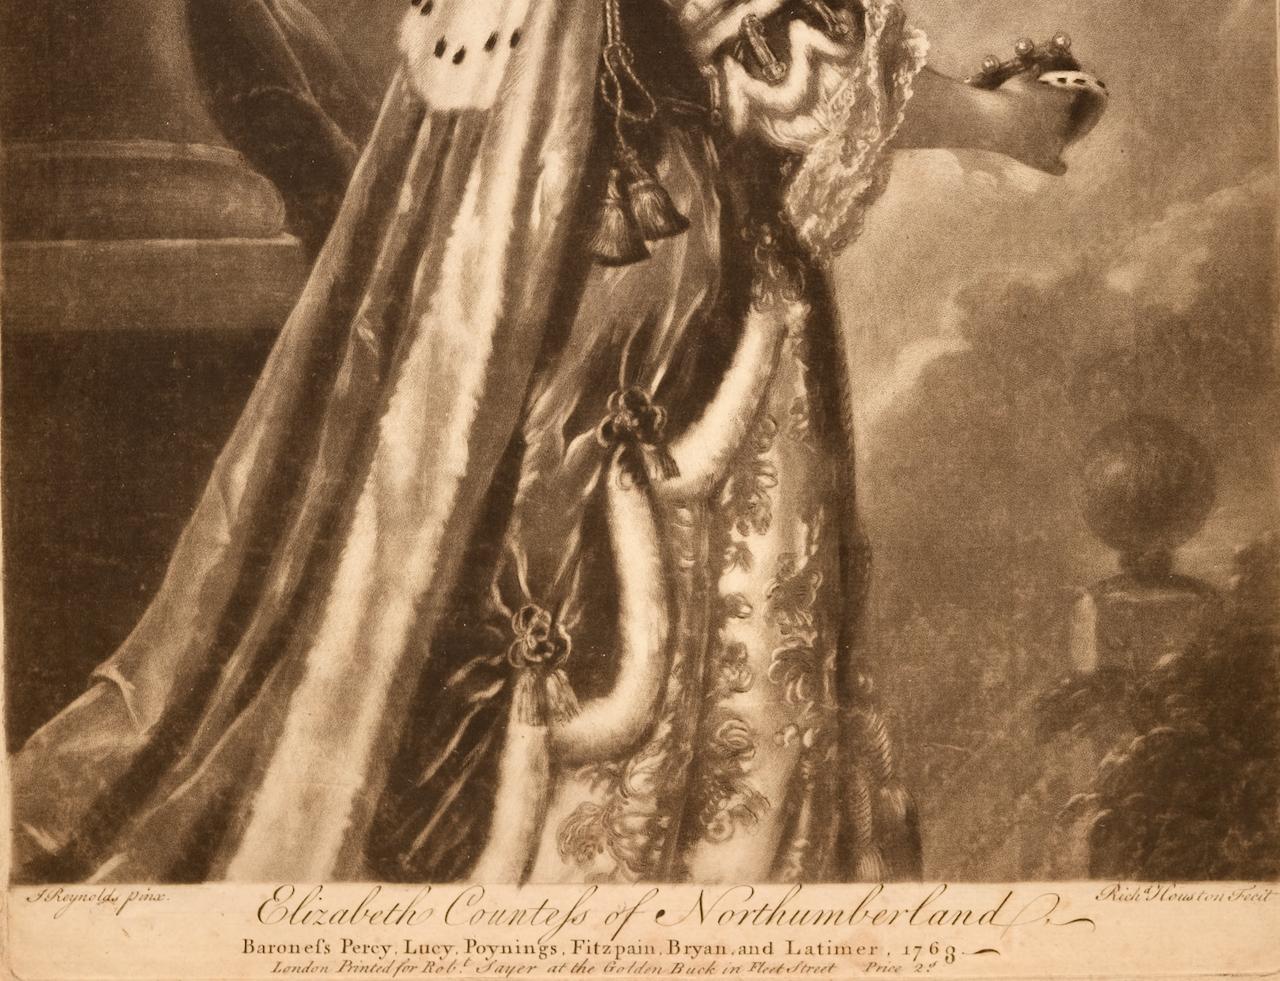 Dies ist ein Schabkunstporträt von Elizabeth, Gräfin von Northumberland, Baronin Percy, aus dem 18. Jahrhundert von Richard Houston nach einem Gemälde von Joshua Reynolds, das 1763 in London von Robert Sayer veröffentlicht wurde. Es handelt sich um